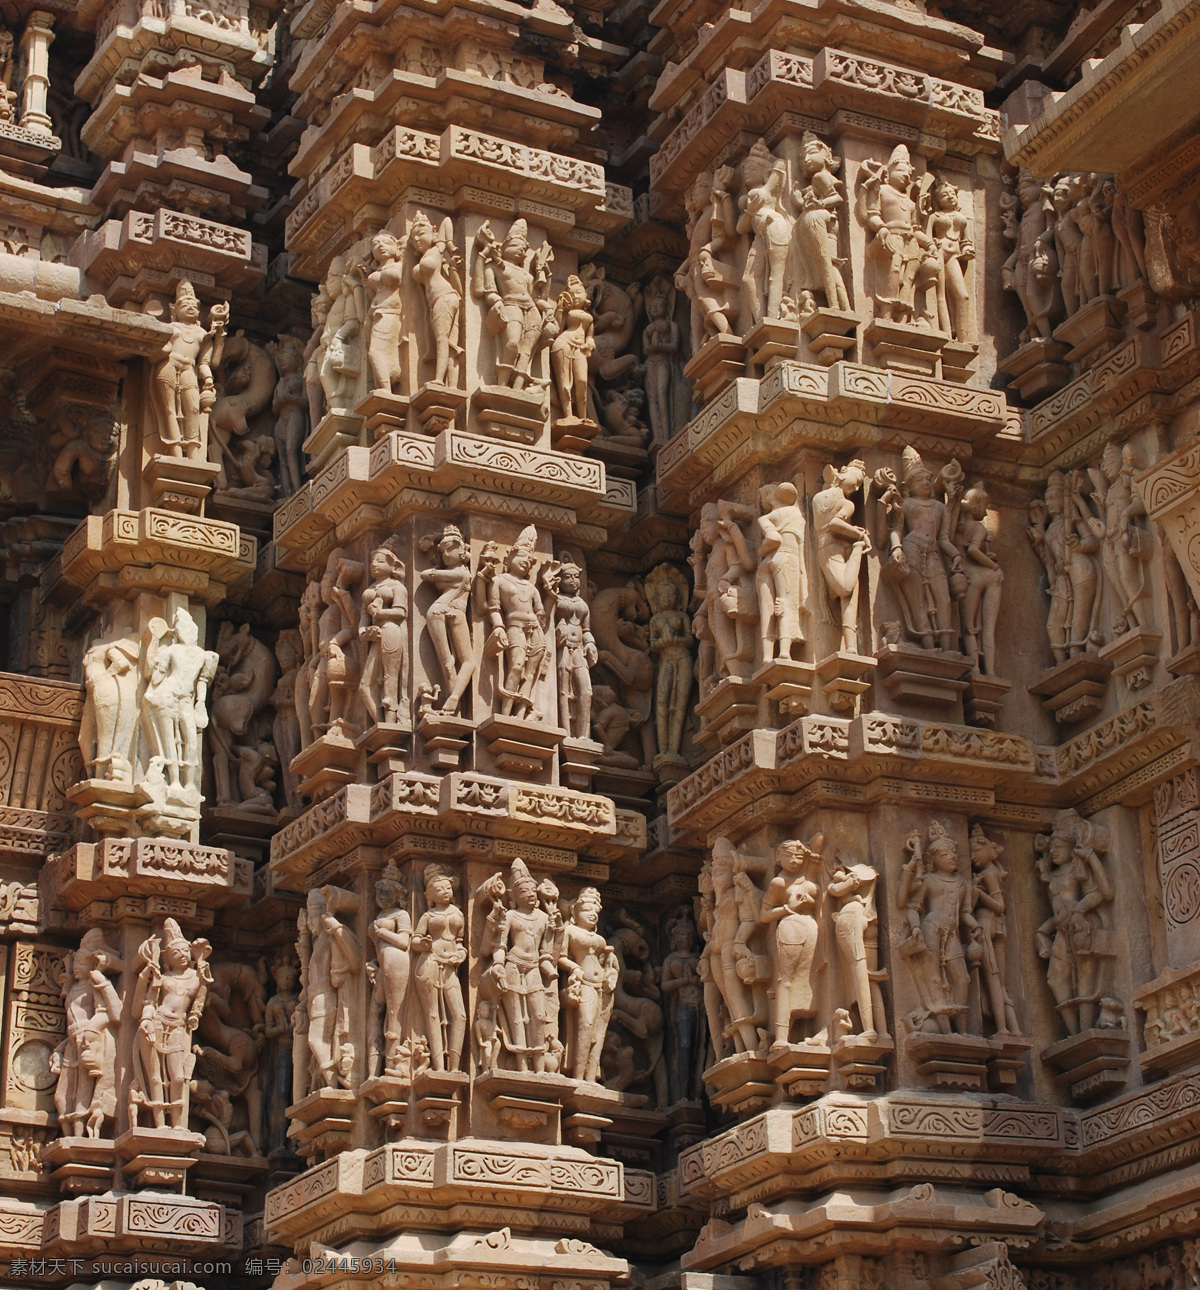 克 久 拉 霍 雕刻 风景 雕像 克久拉霍寺 印度寺庙 建筑风景 印度旅游景点 美丽风光 风景摄影 美丽景色 美景 文明古迹 建筑设计 环境家居 黑色